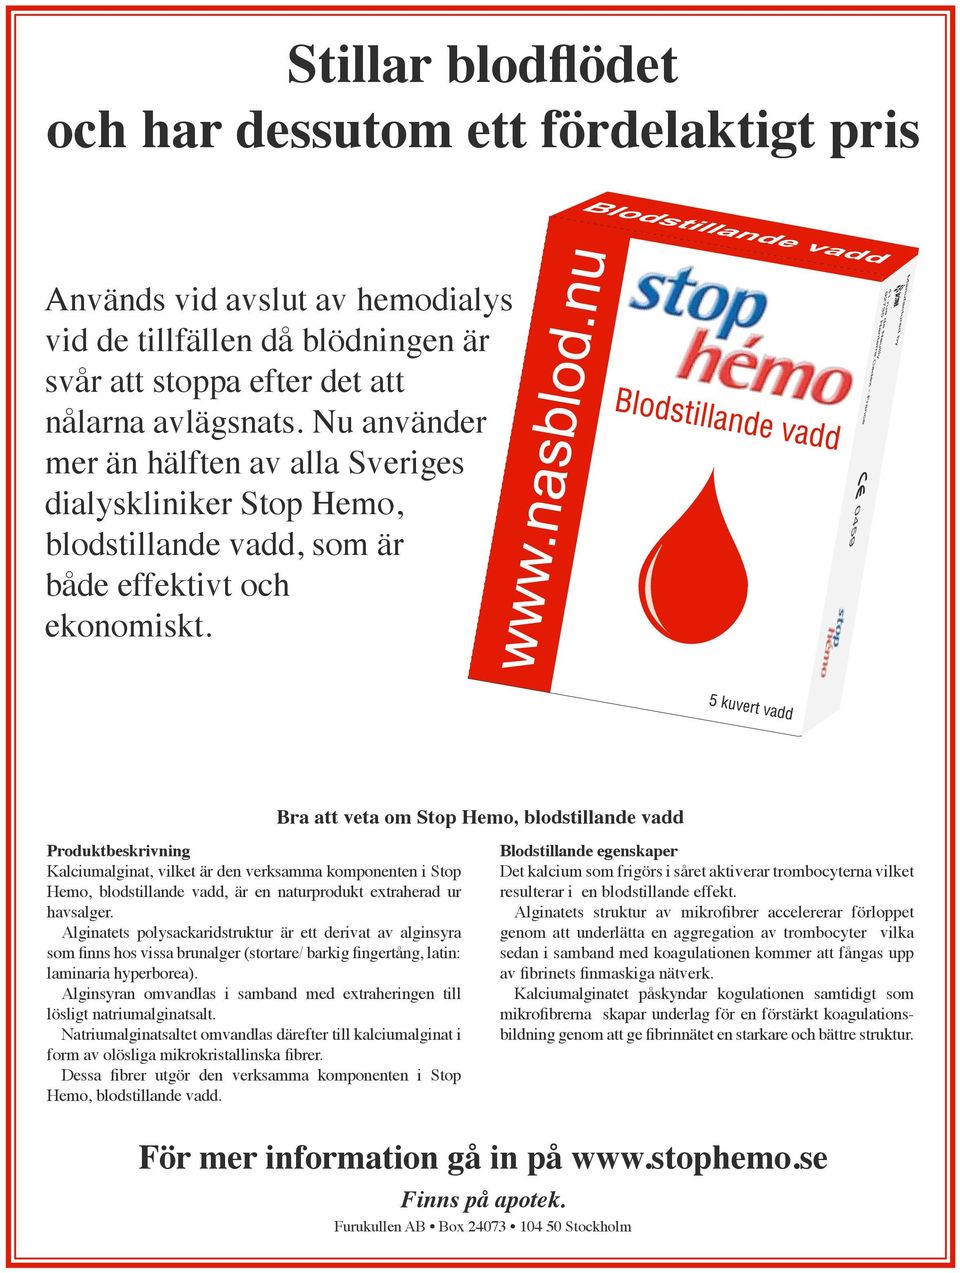 Produktbeskrivning Kalciumalginat, vilket är den verksamma komponenten i Stop Hemo, blodstillande vadd, är en naturprodukt extraherad ur havsalger.